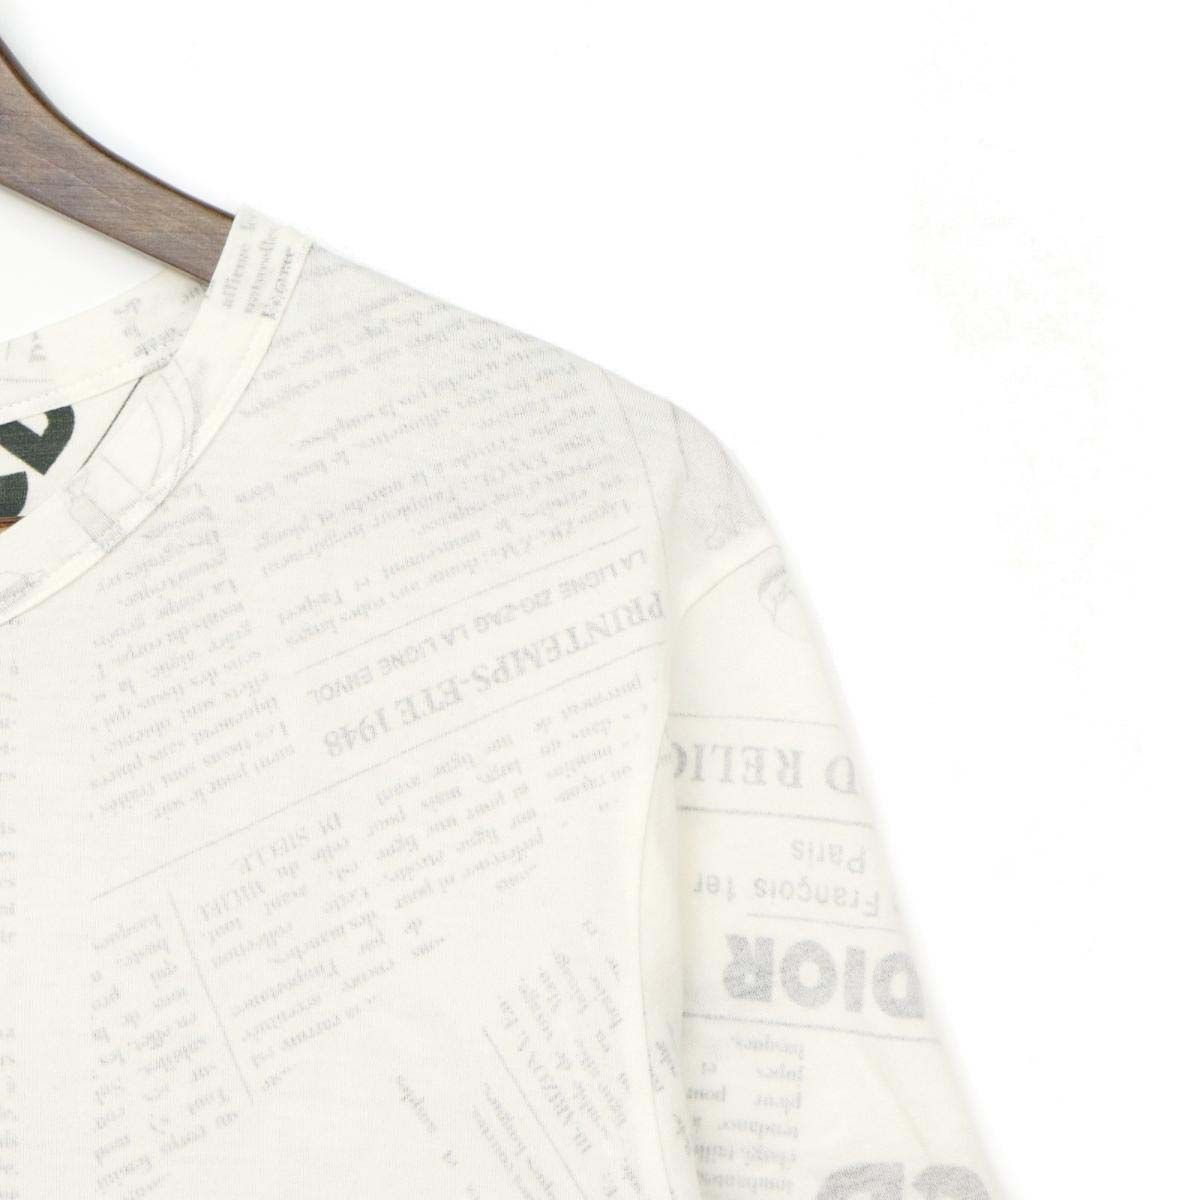 Dior ディオール  ダニエル アーシャム ニュースペーパー ロゴTシャツ